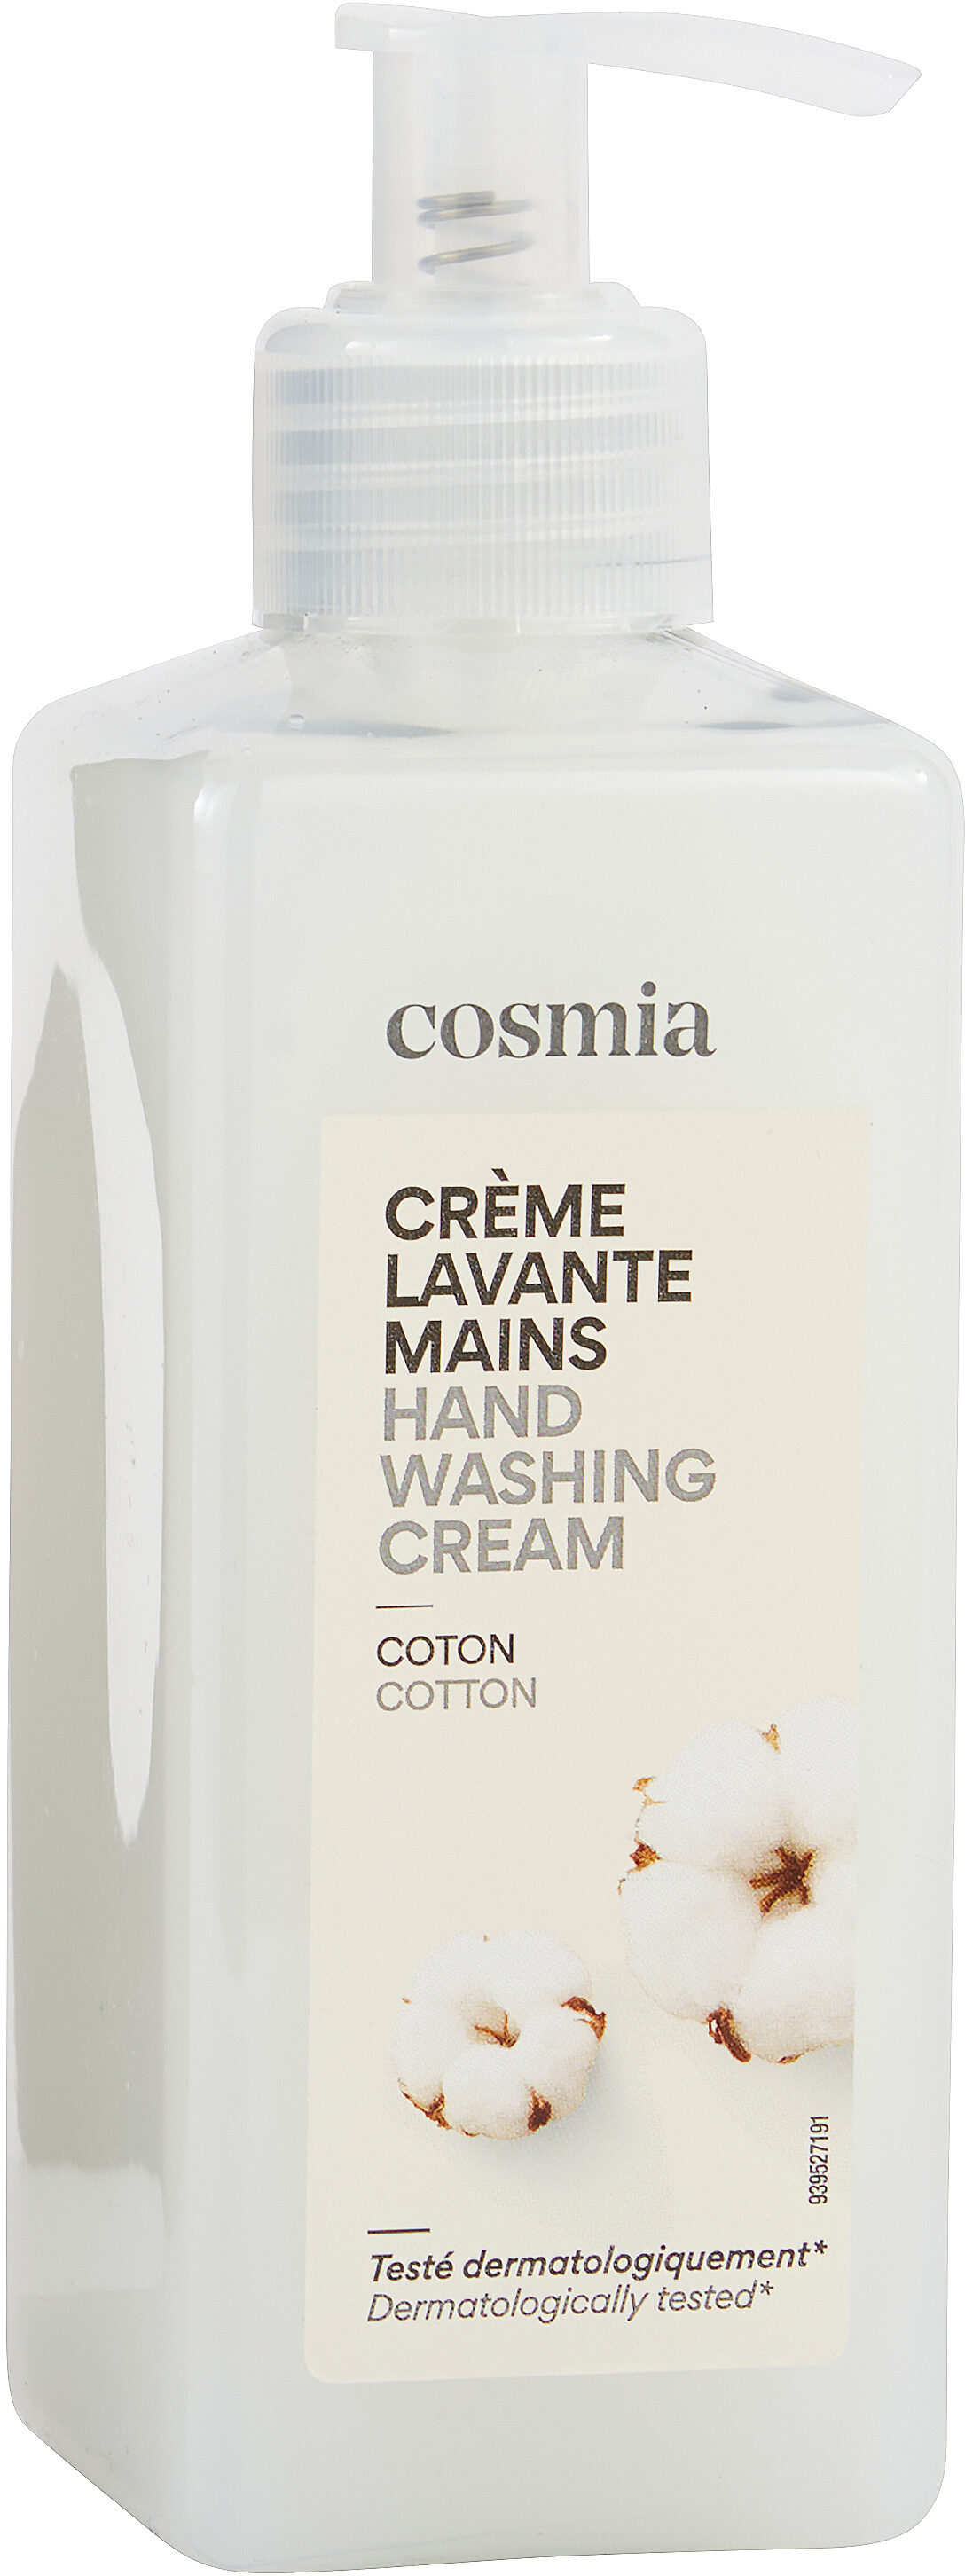 Crème lavante mains - Product - fr